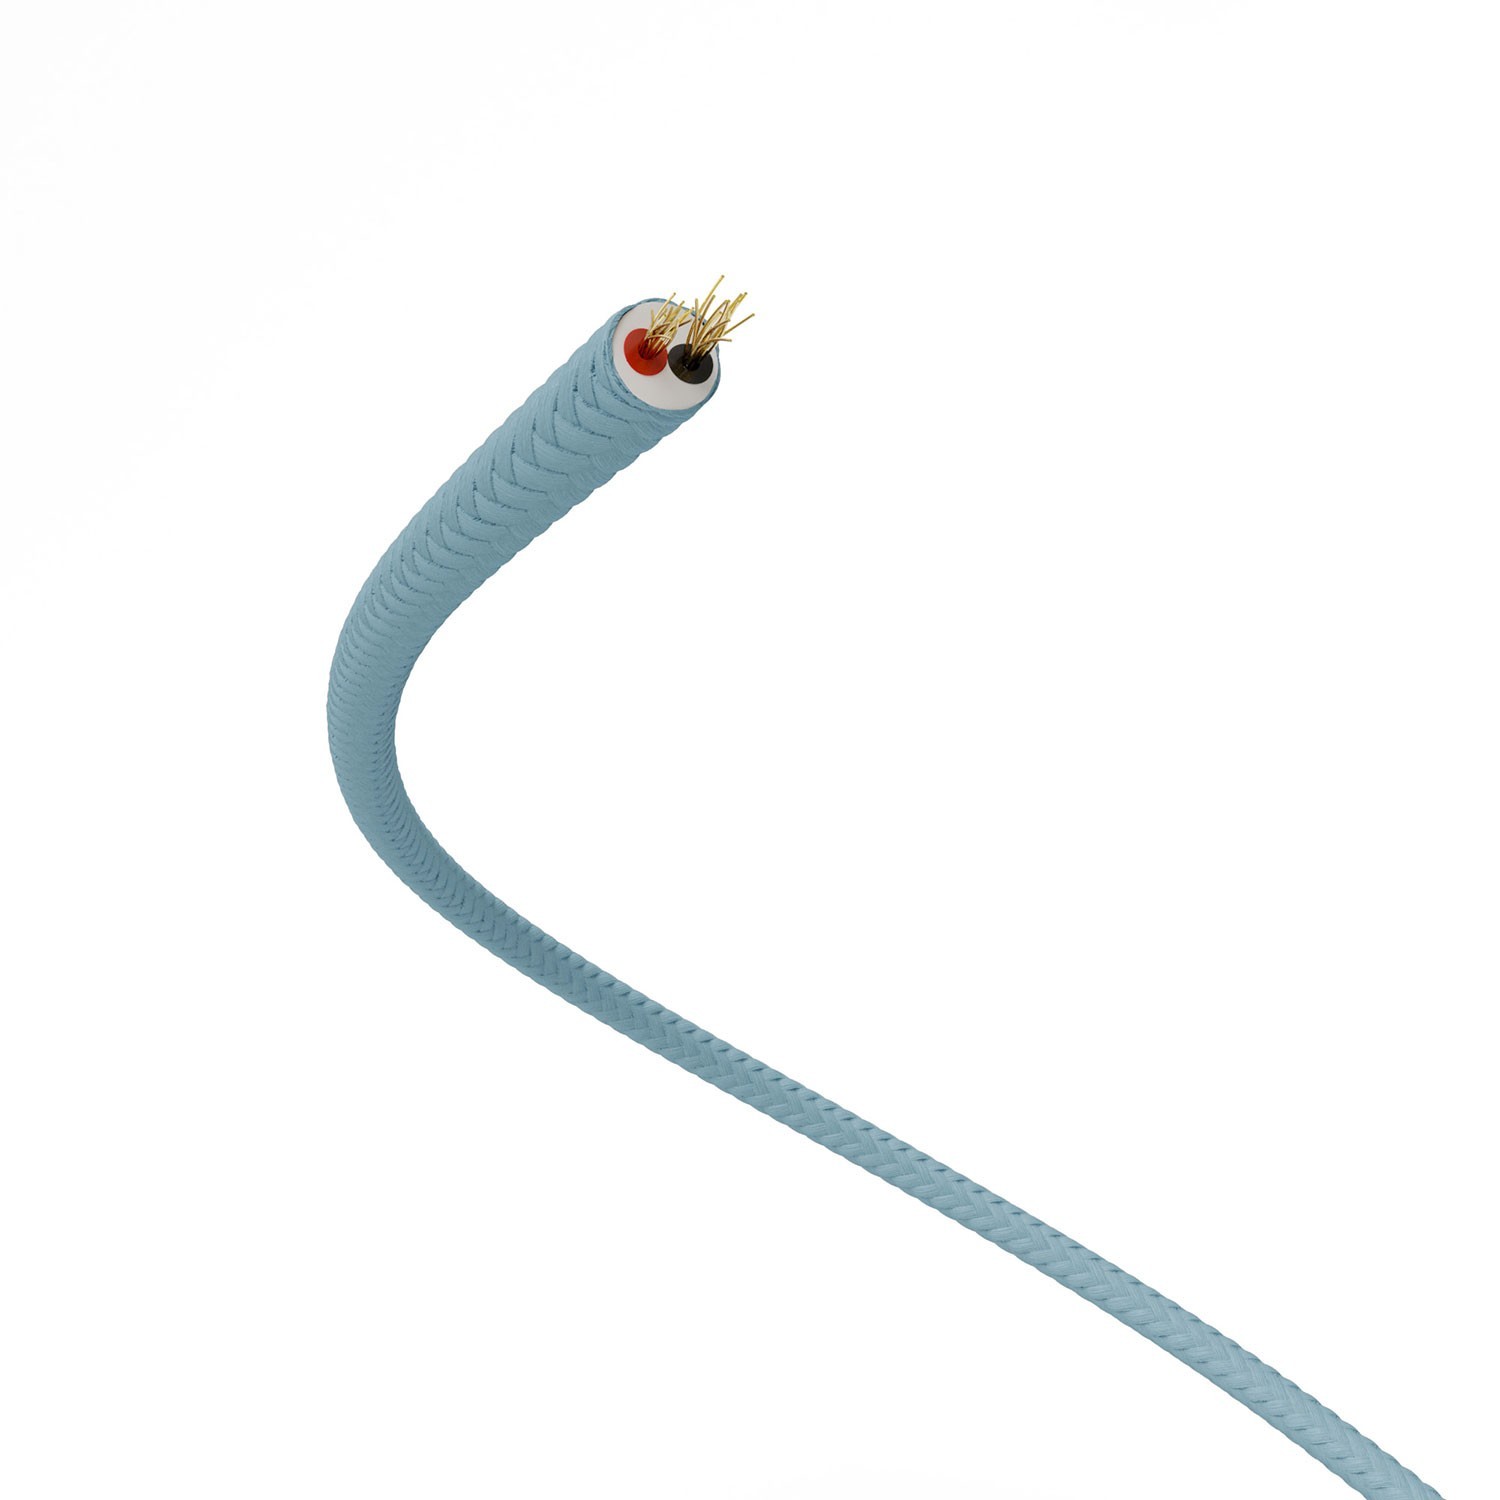 Cable de alimentación Extra Low Voltage revestido de tejido efecto seda Azul claro RM17 - 50 m